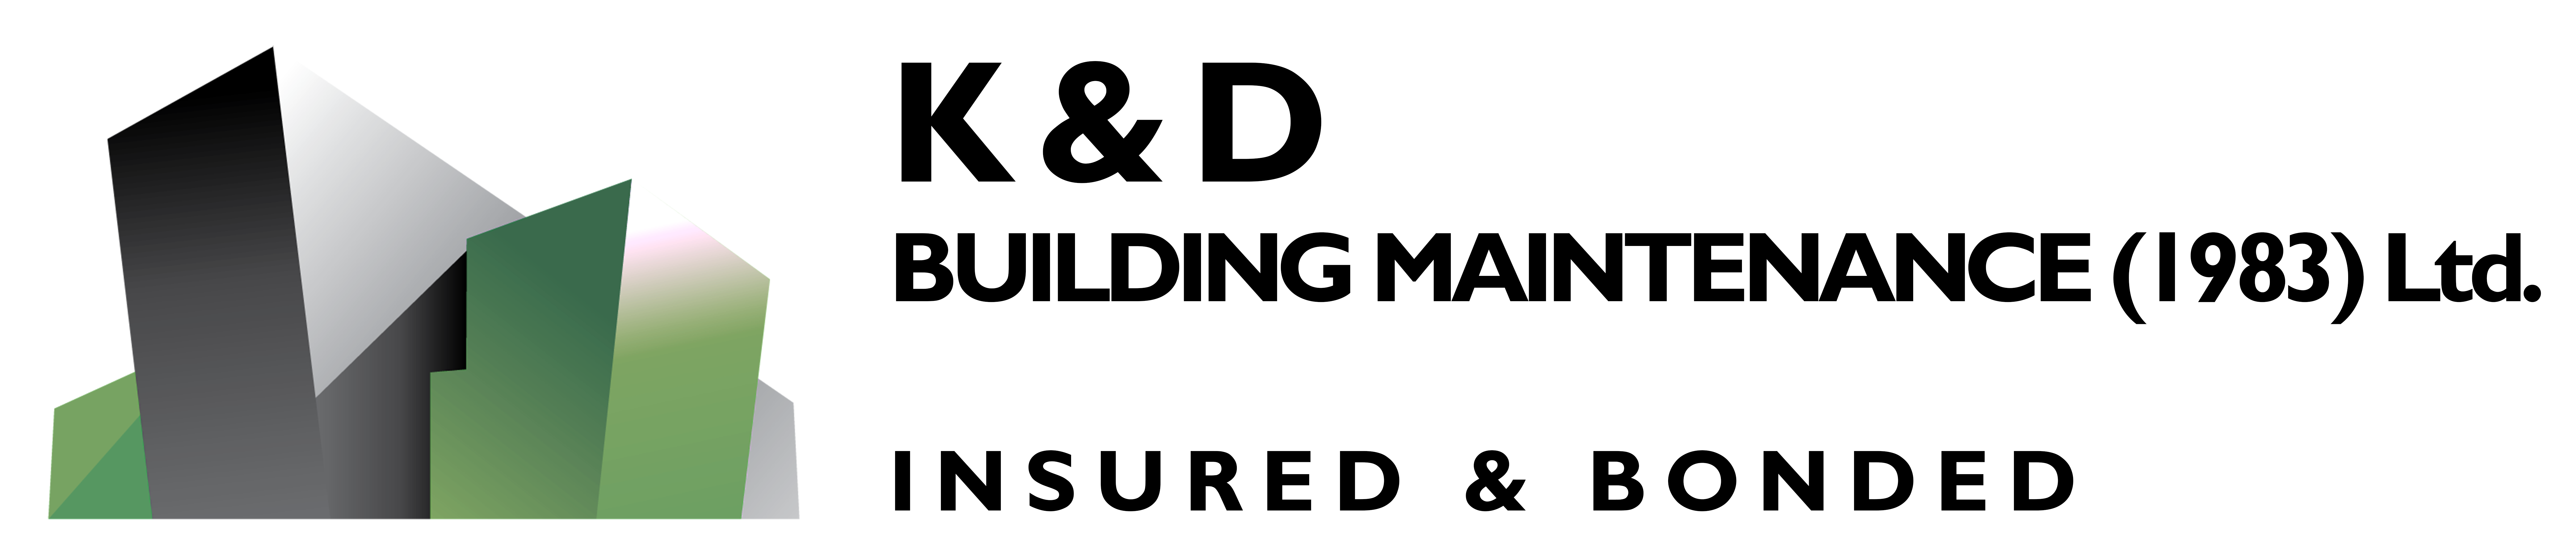 K&D Building Maintenance